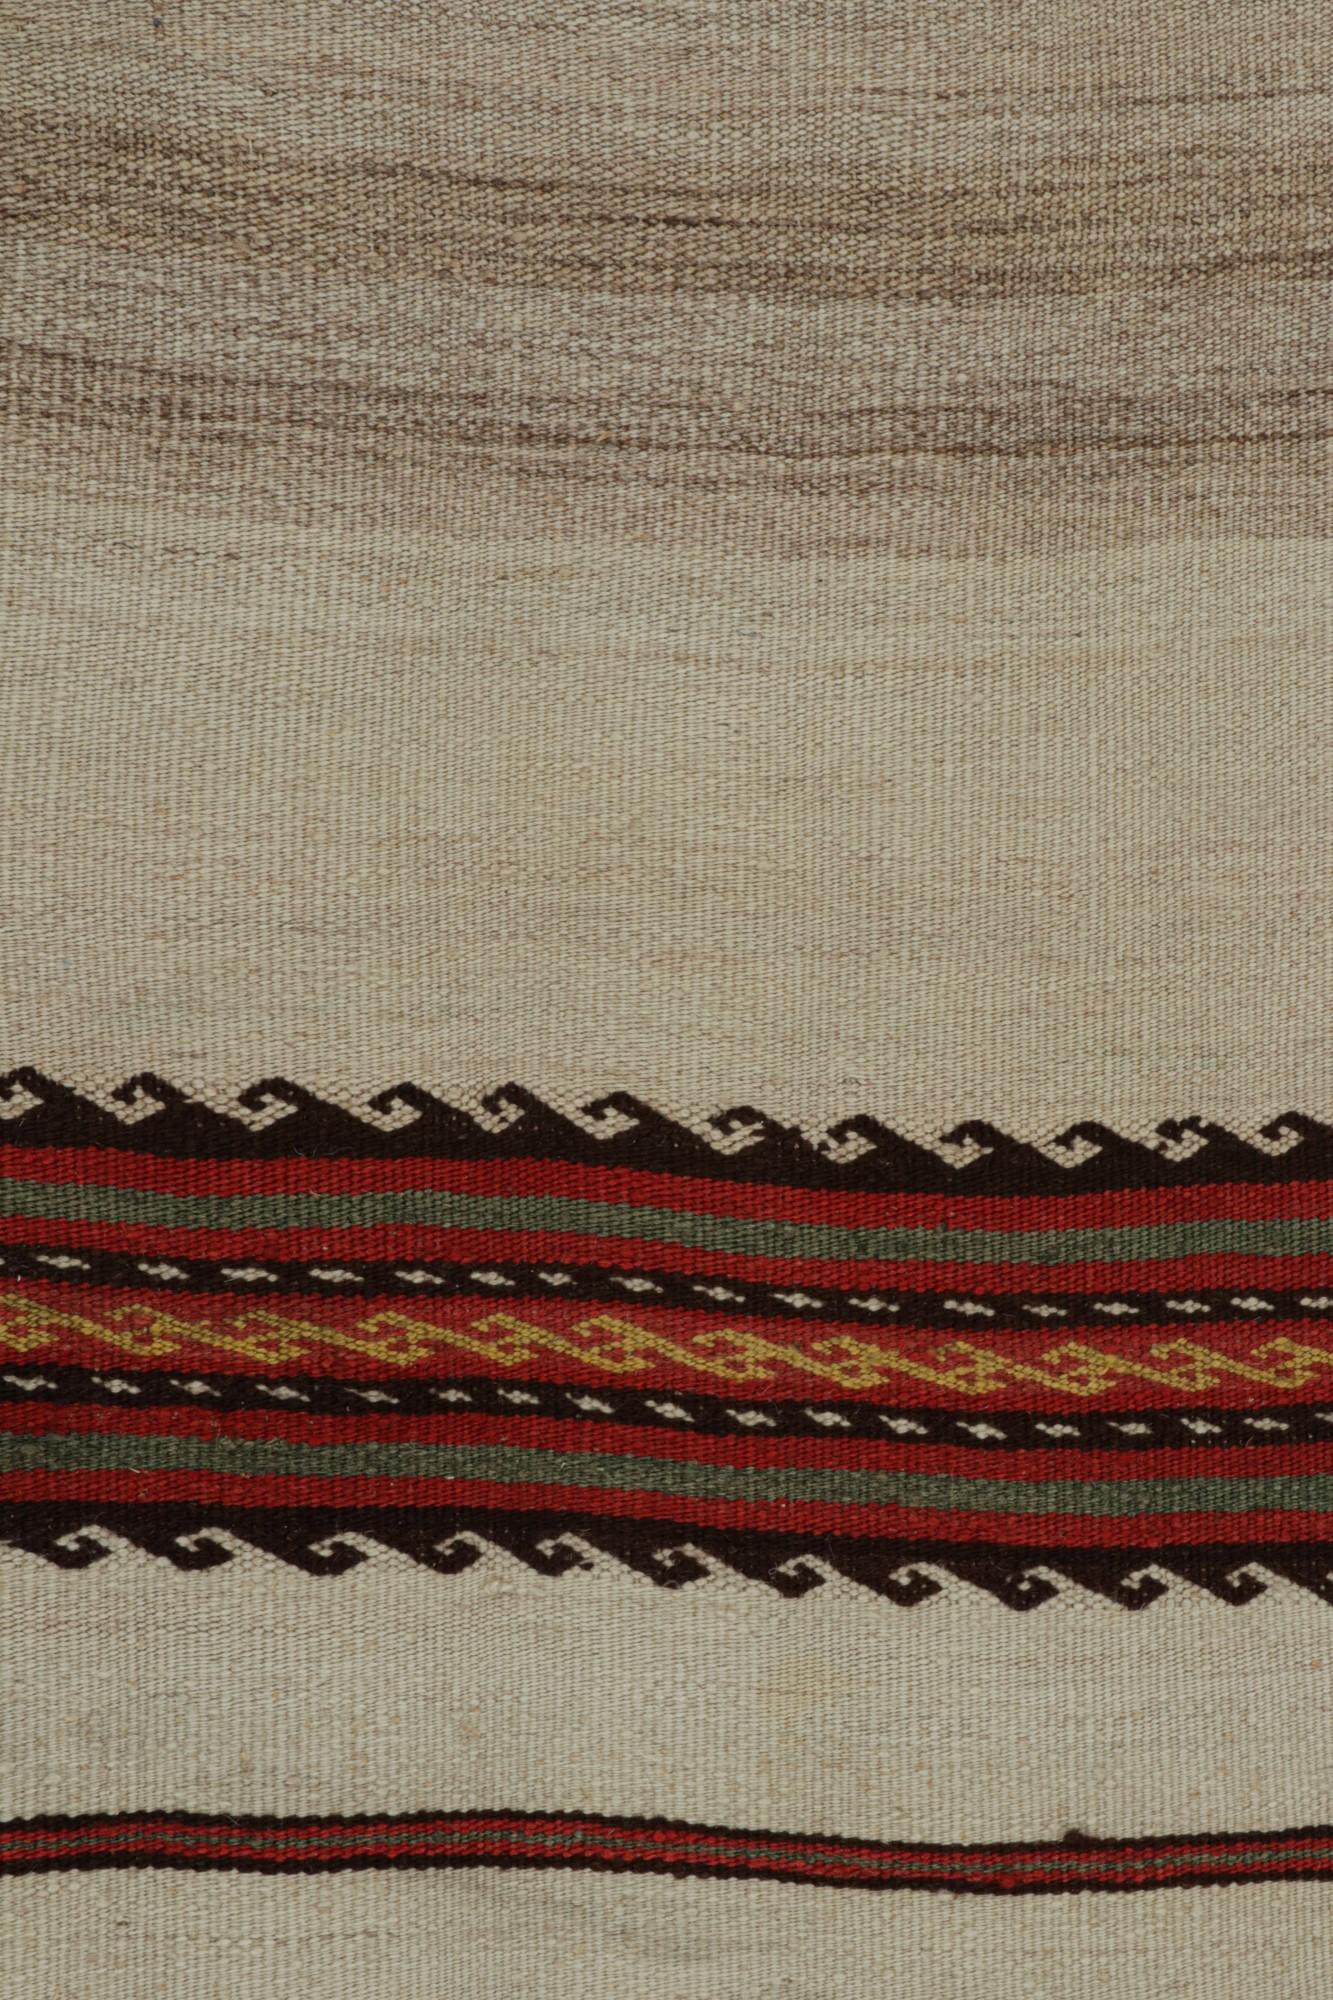 Wool Vintage Afghan Tribal Kilim Runner Rug in Beige, with Stripes, from Rug & Kilim  For Sale